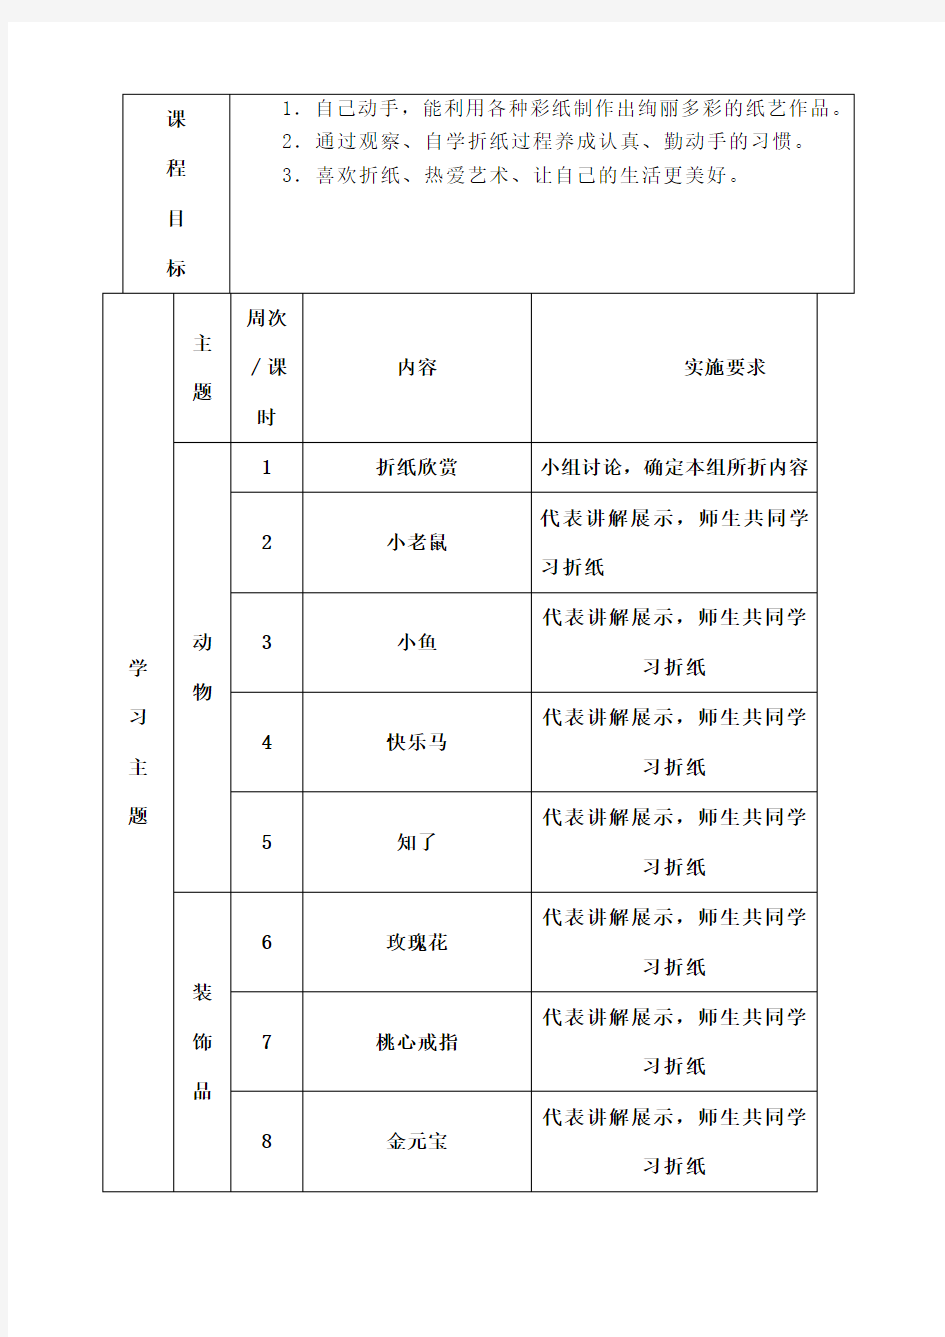 折纸校本课程纲要 (2)